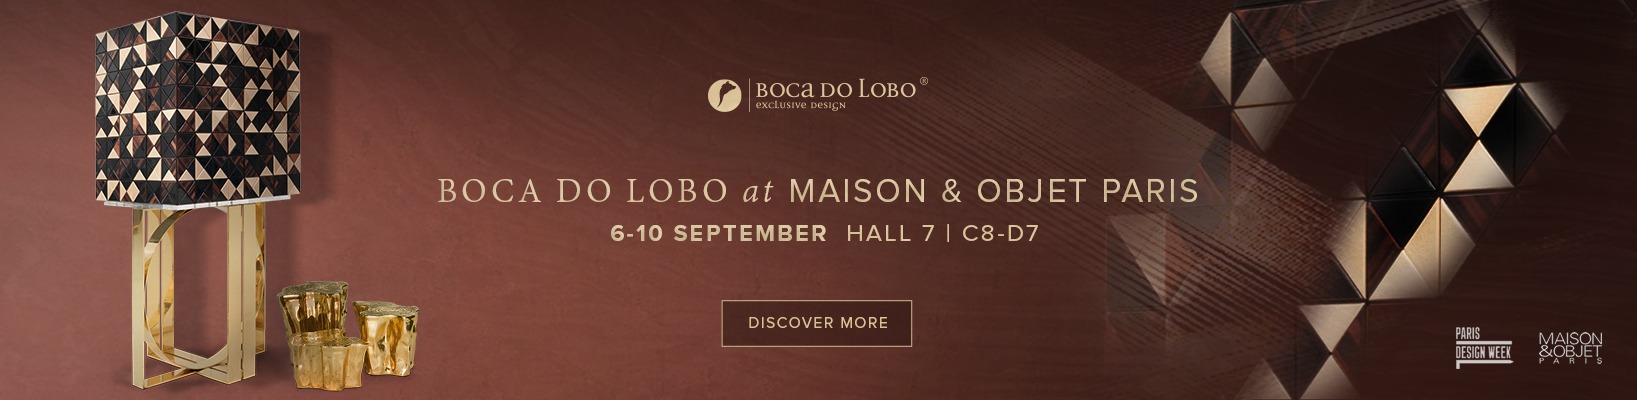 Boca do Lobo at Maison & Objet Paris September 2019